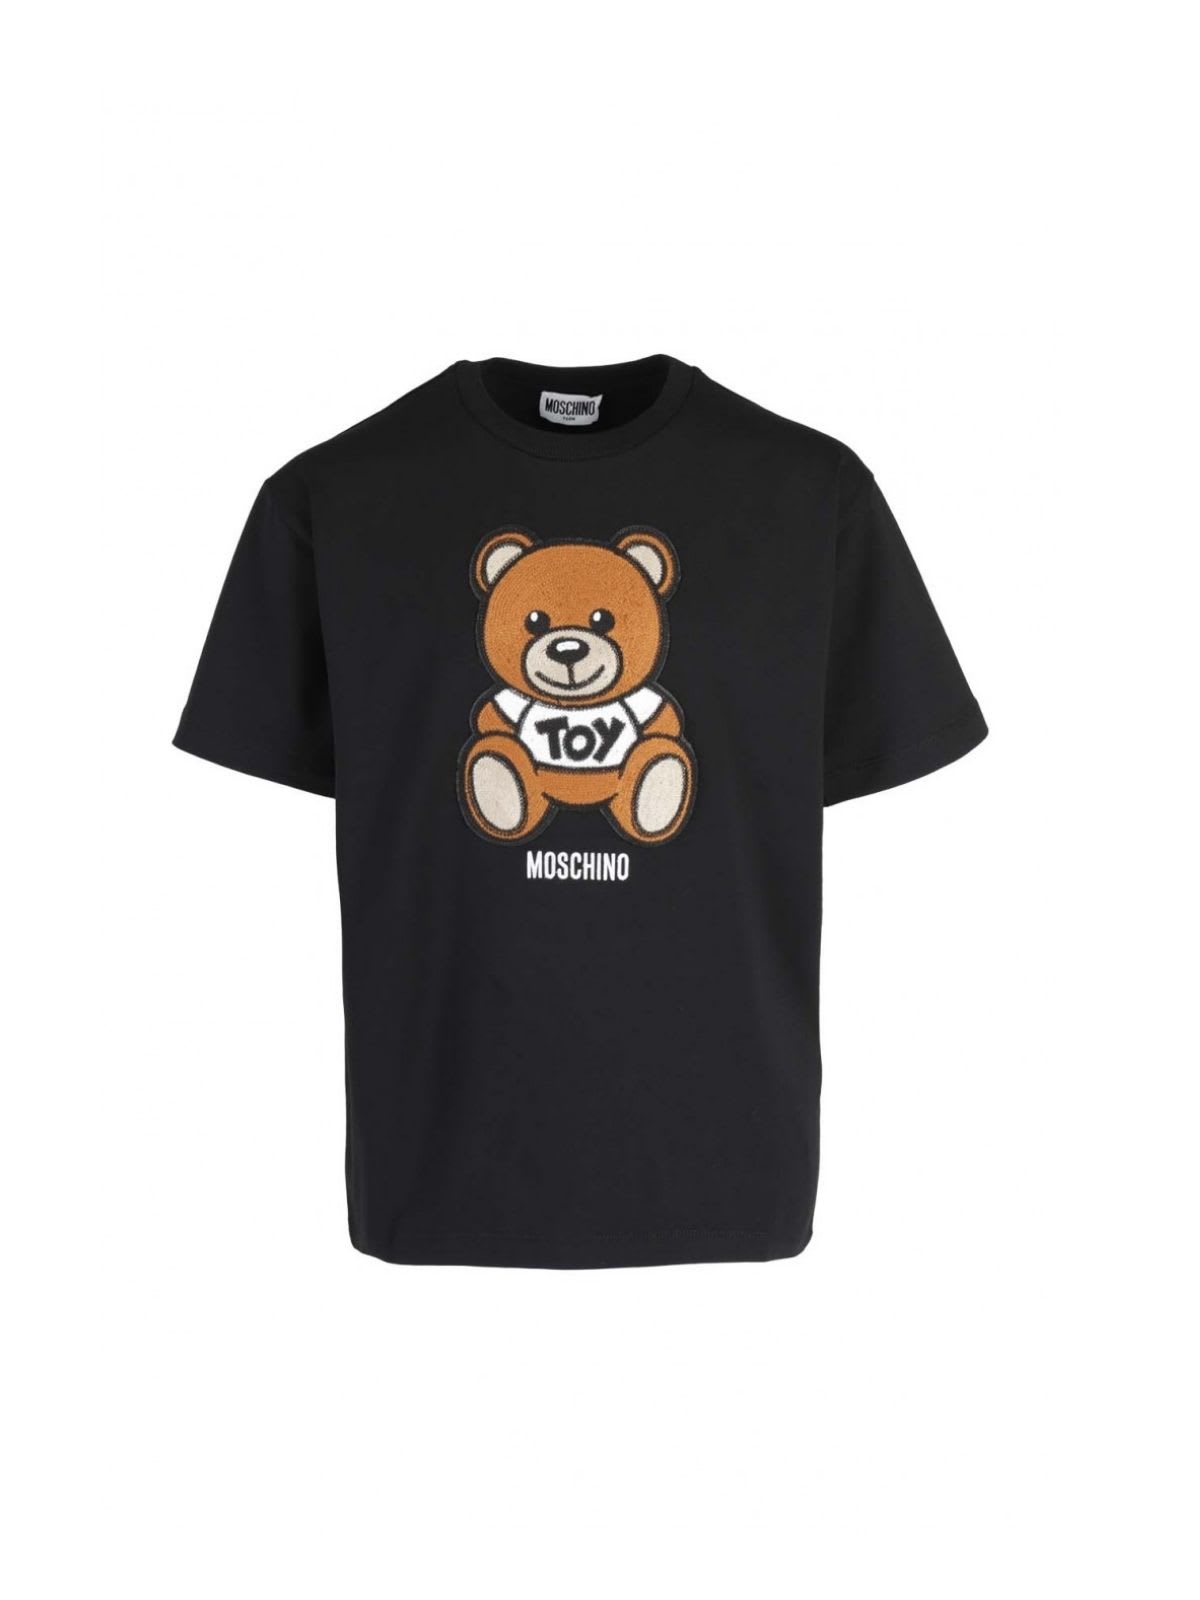 Moschino Maxi T-shirt W/teddy